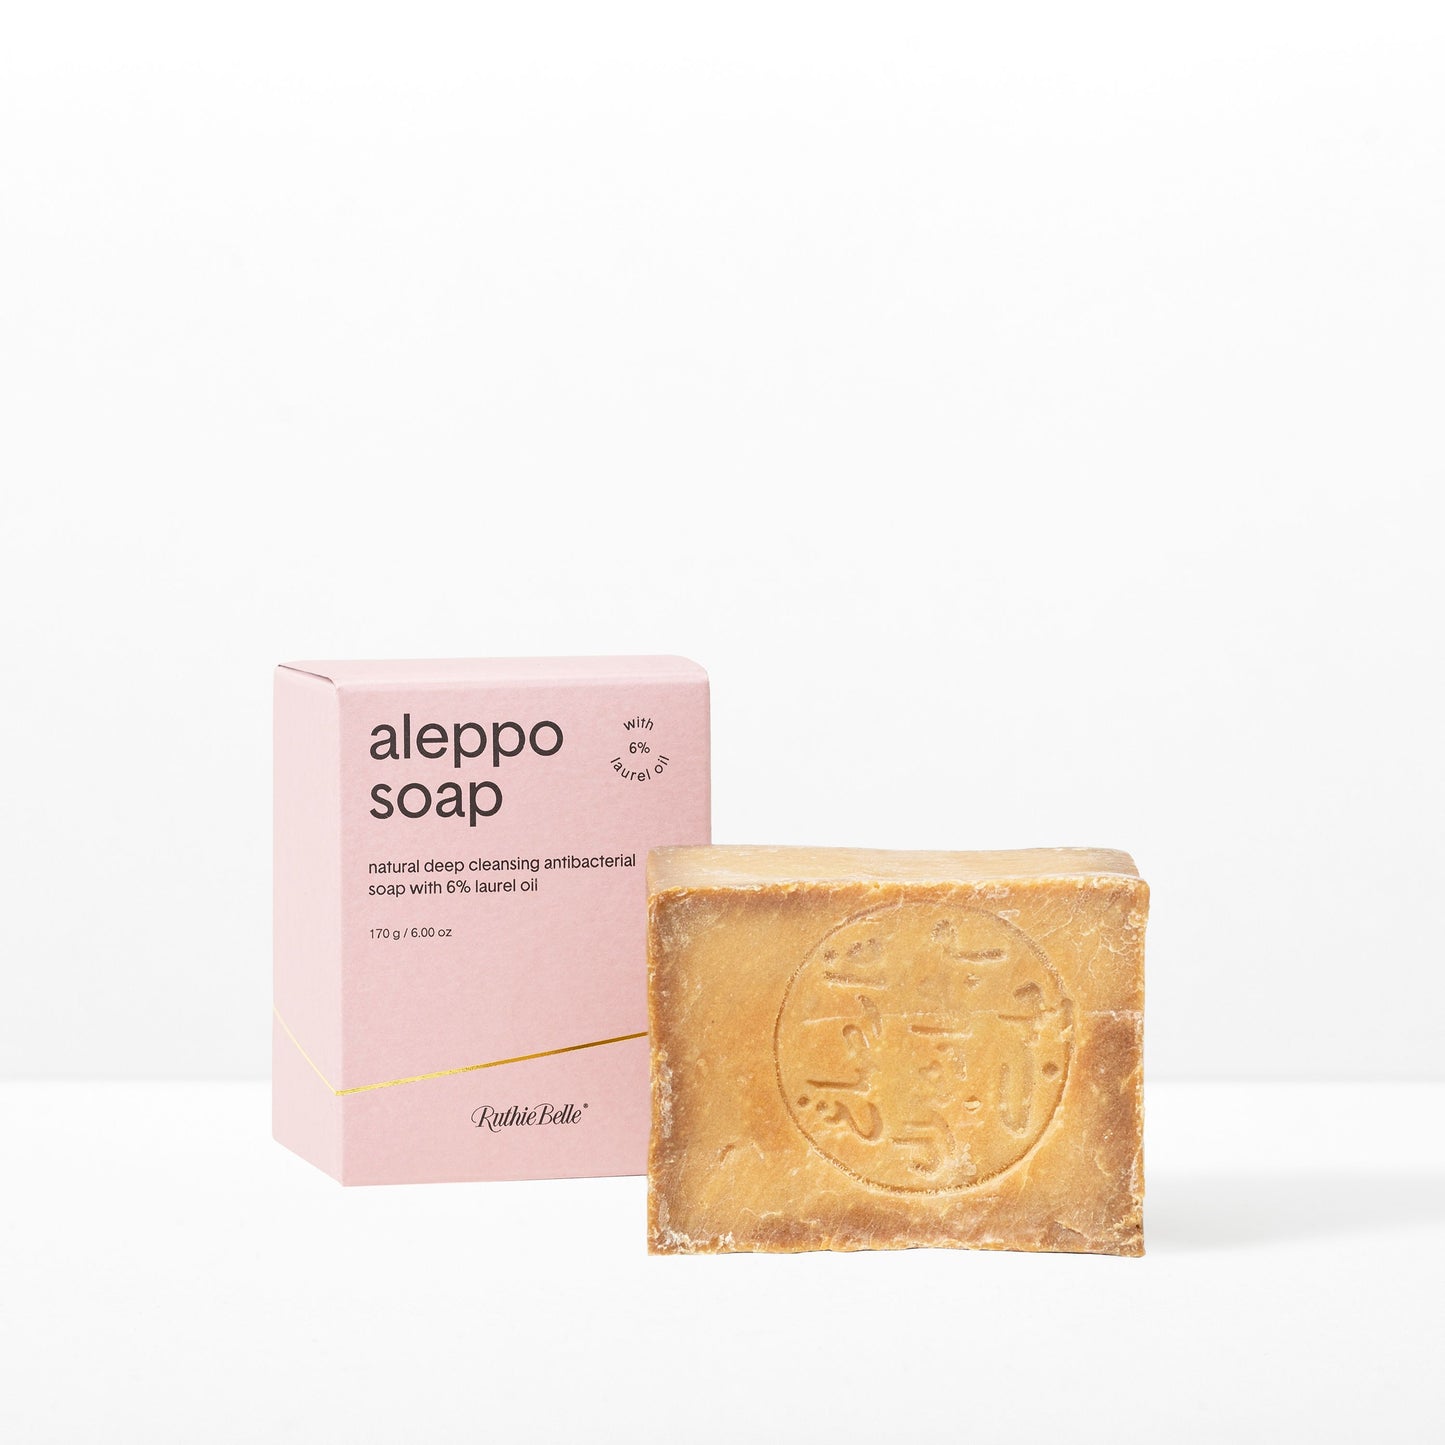 Aleppo Soap 6%